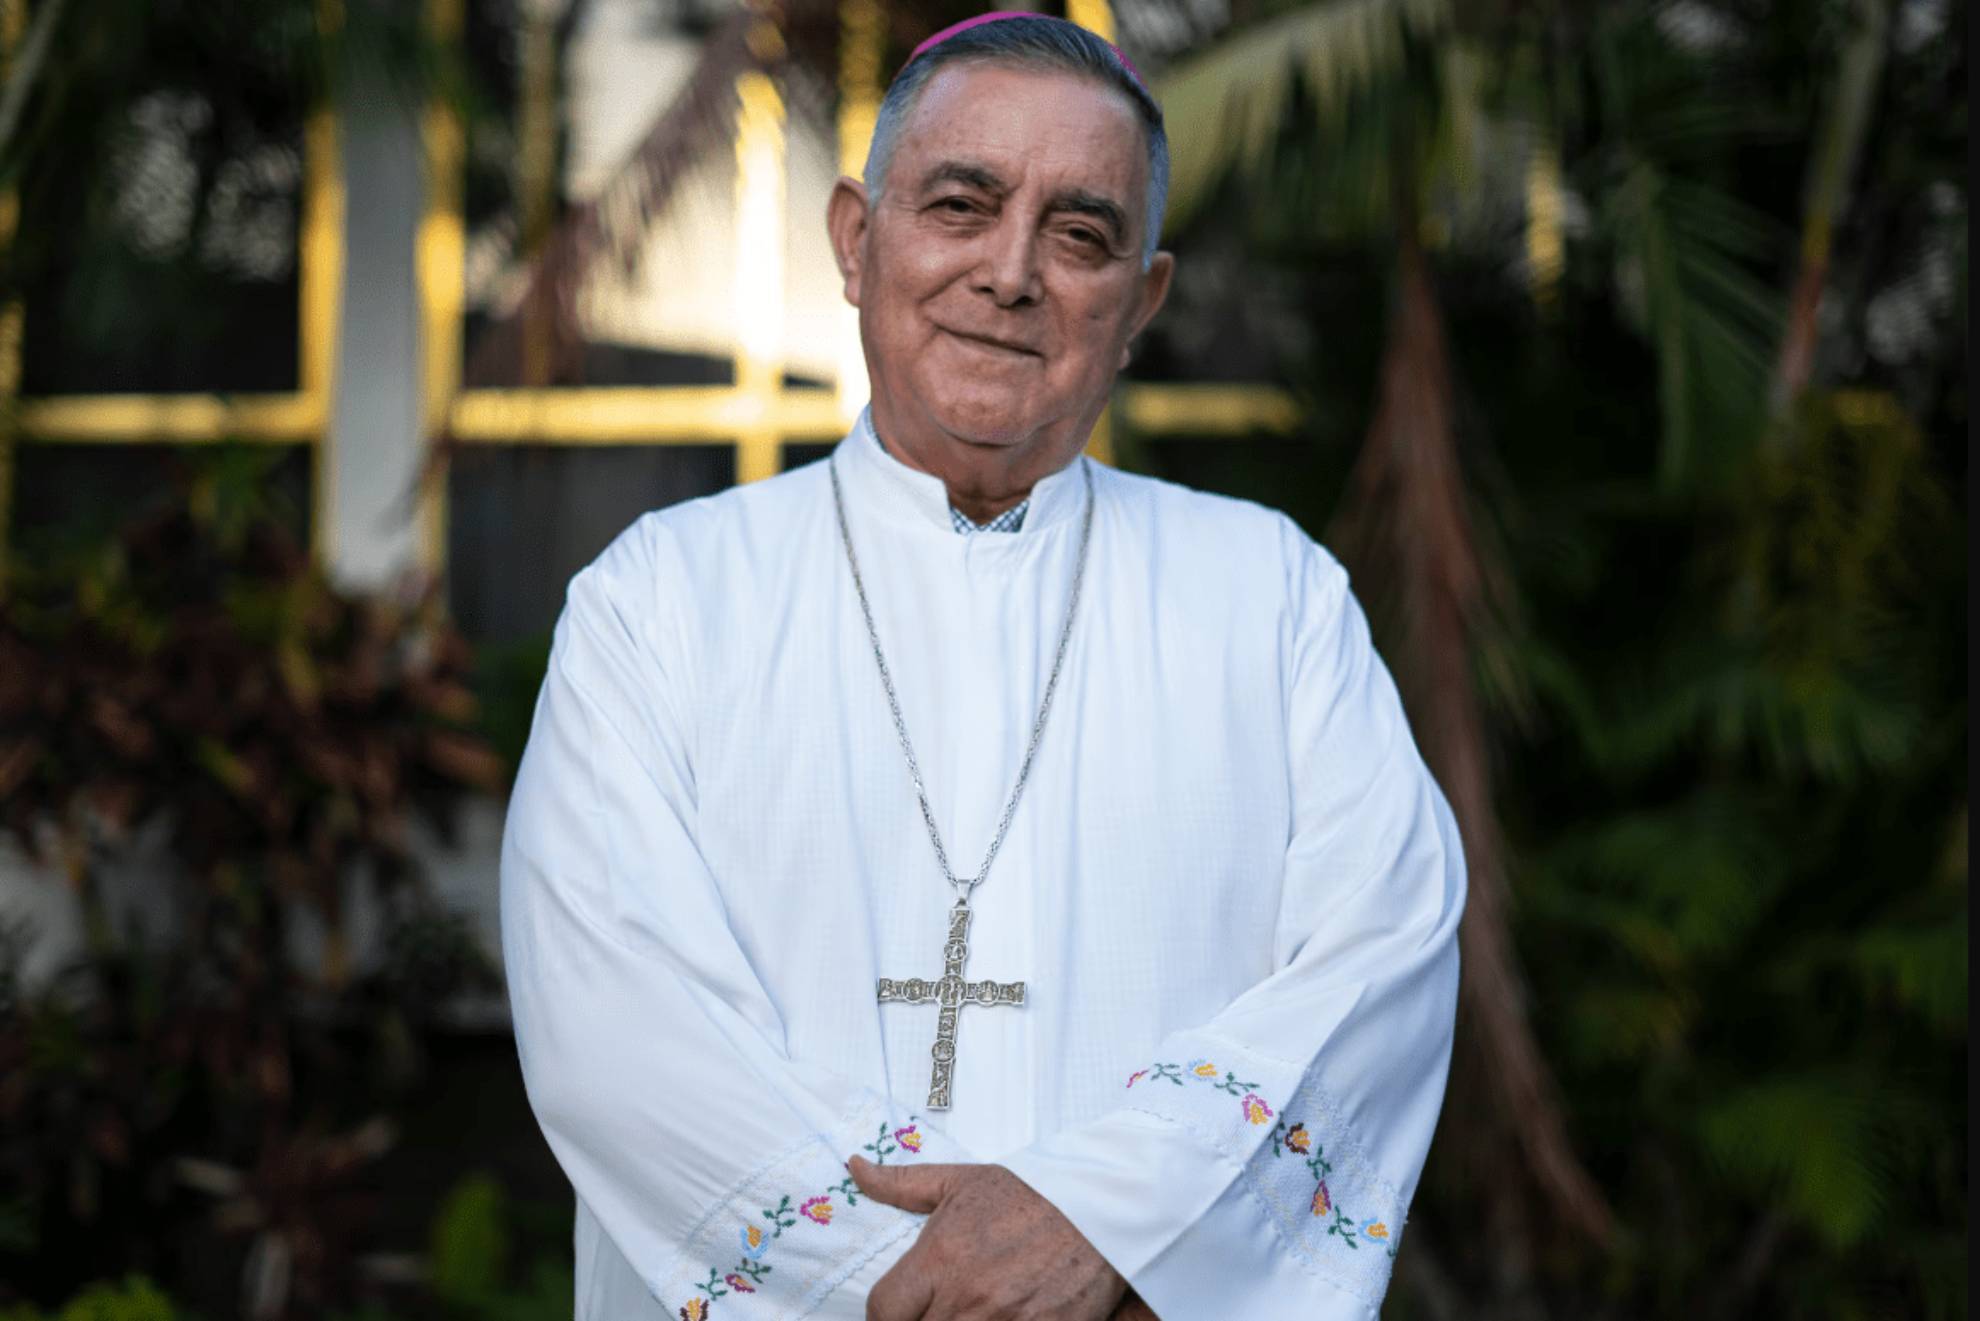 El caso del obispo Rangel ha dado un giro inesperado.